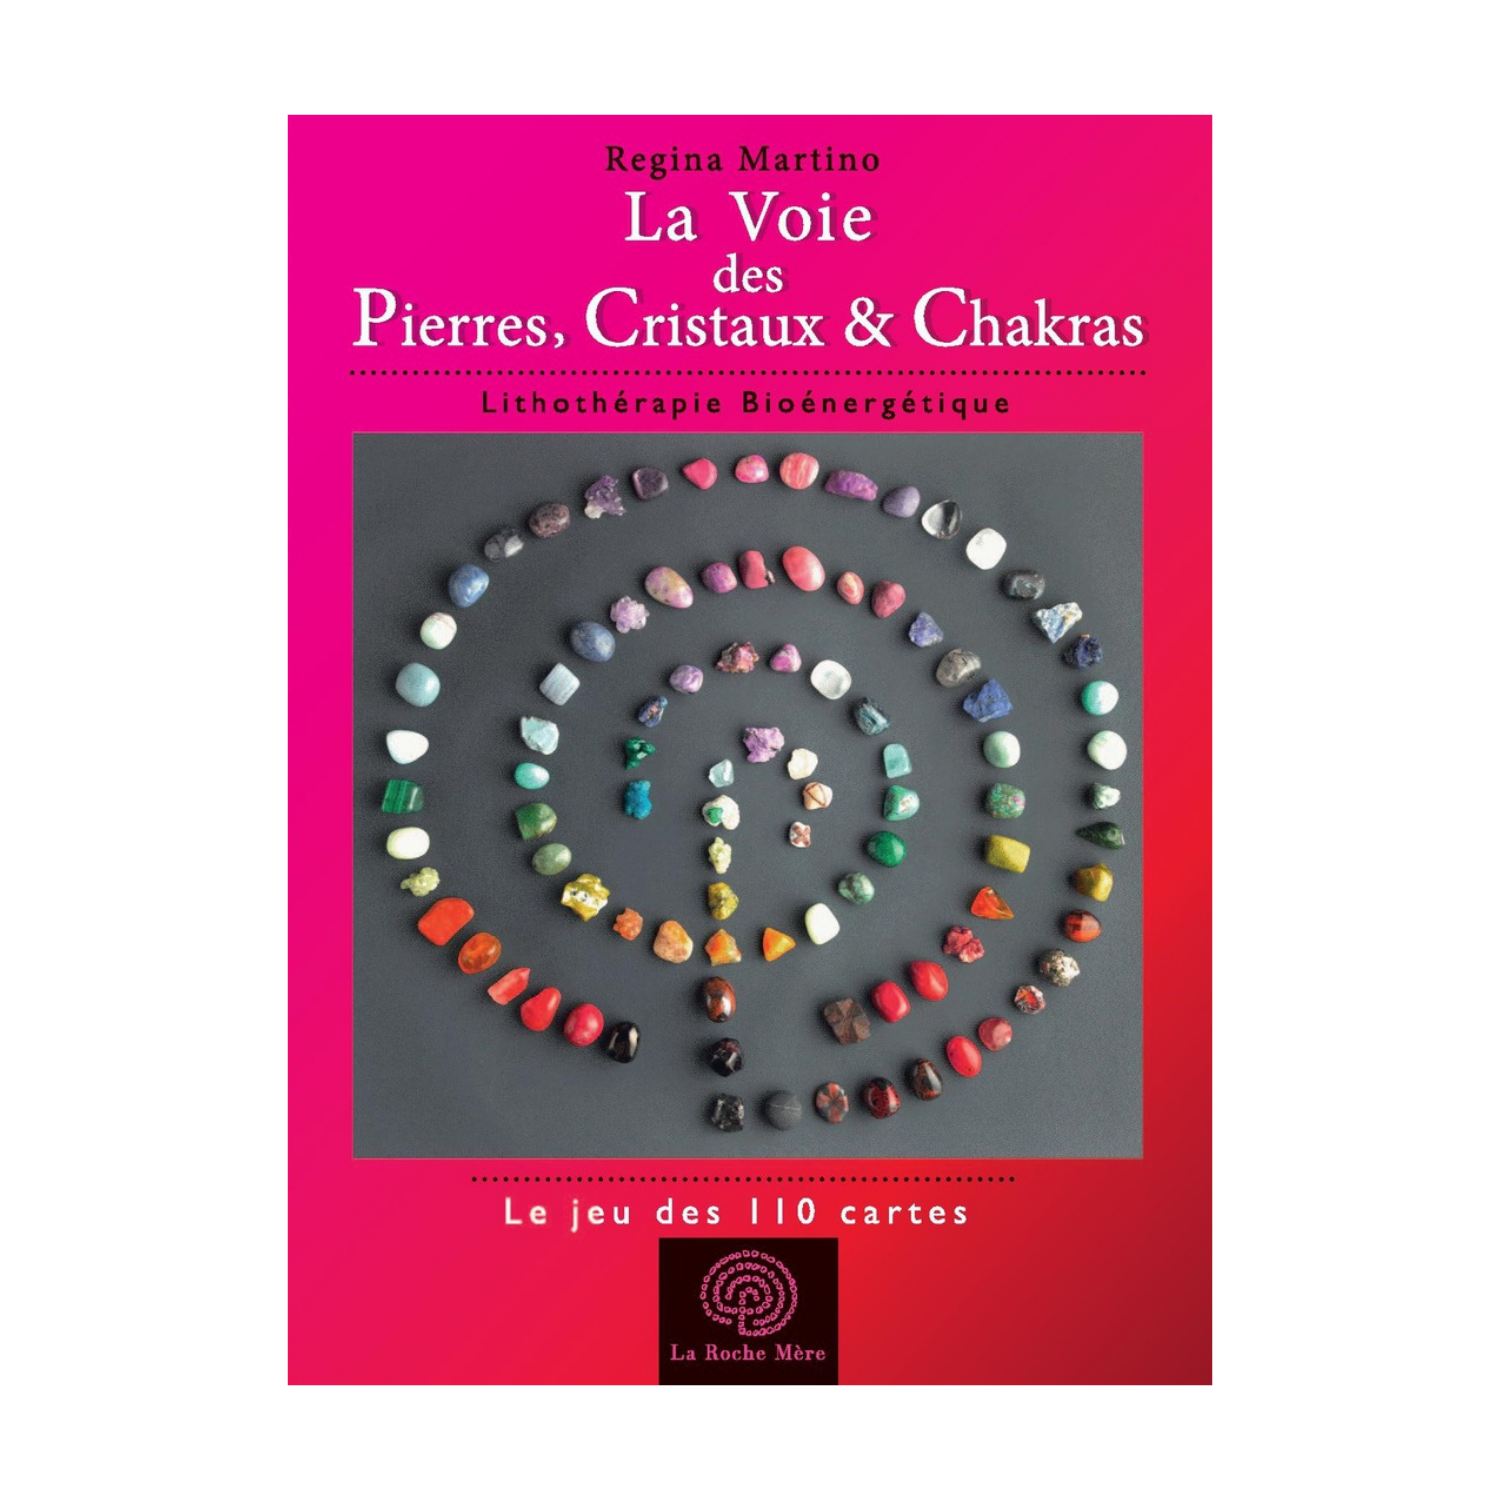 La Voie des Pierres, Cristaux & Chakras